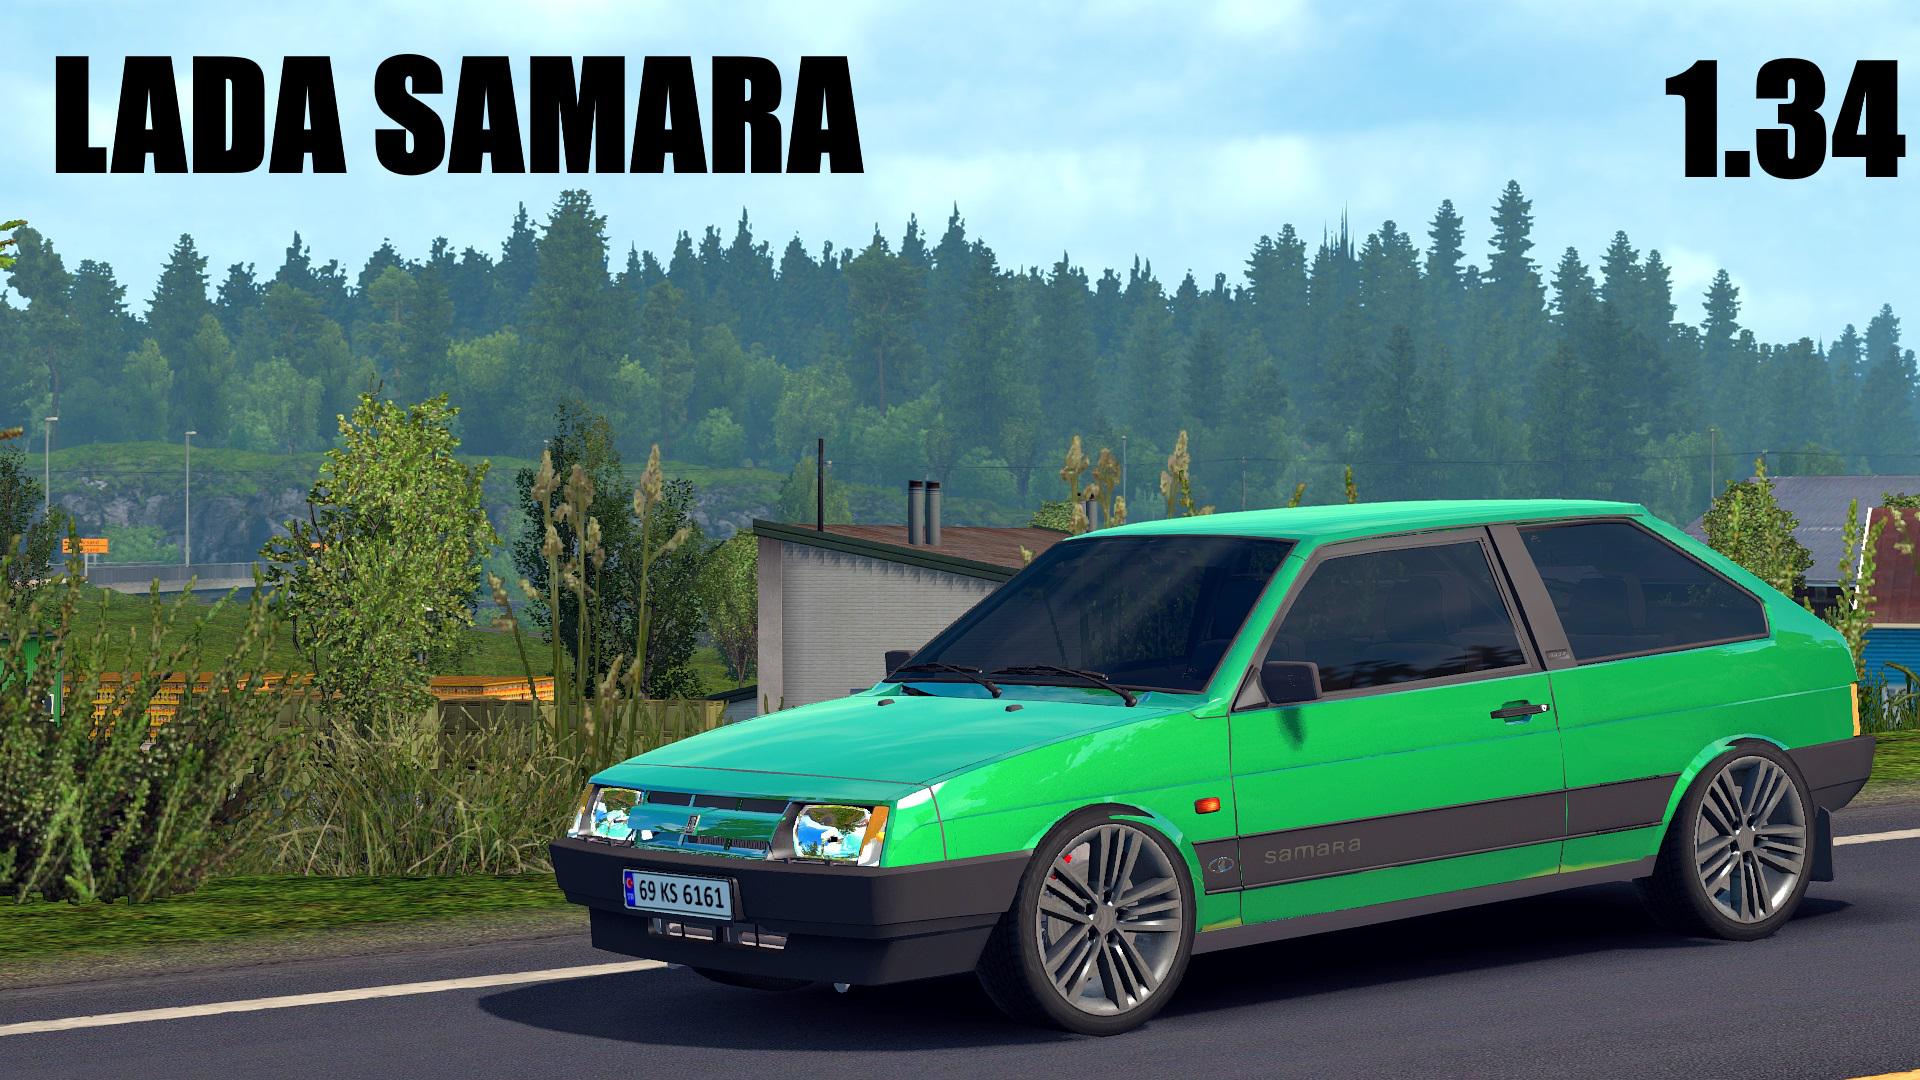 Lada Samara 1.34 Fix